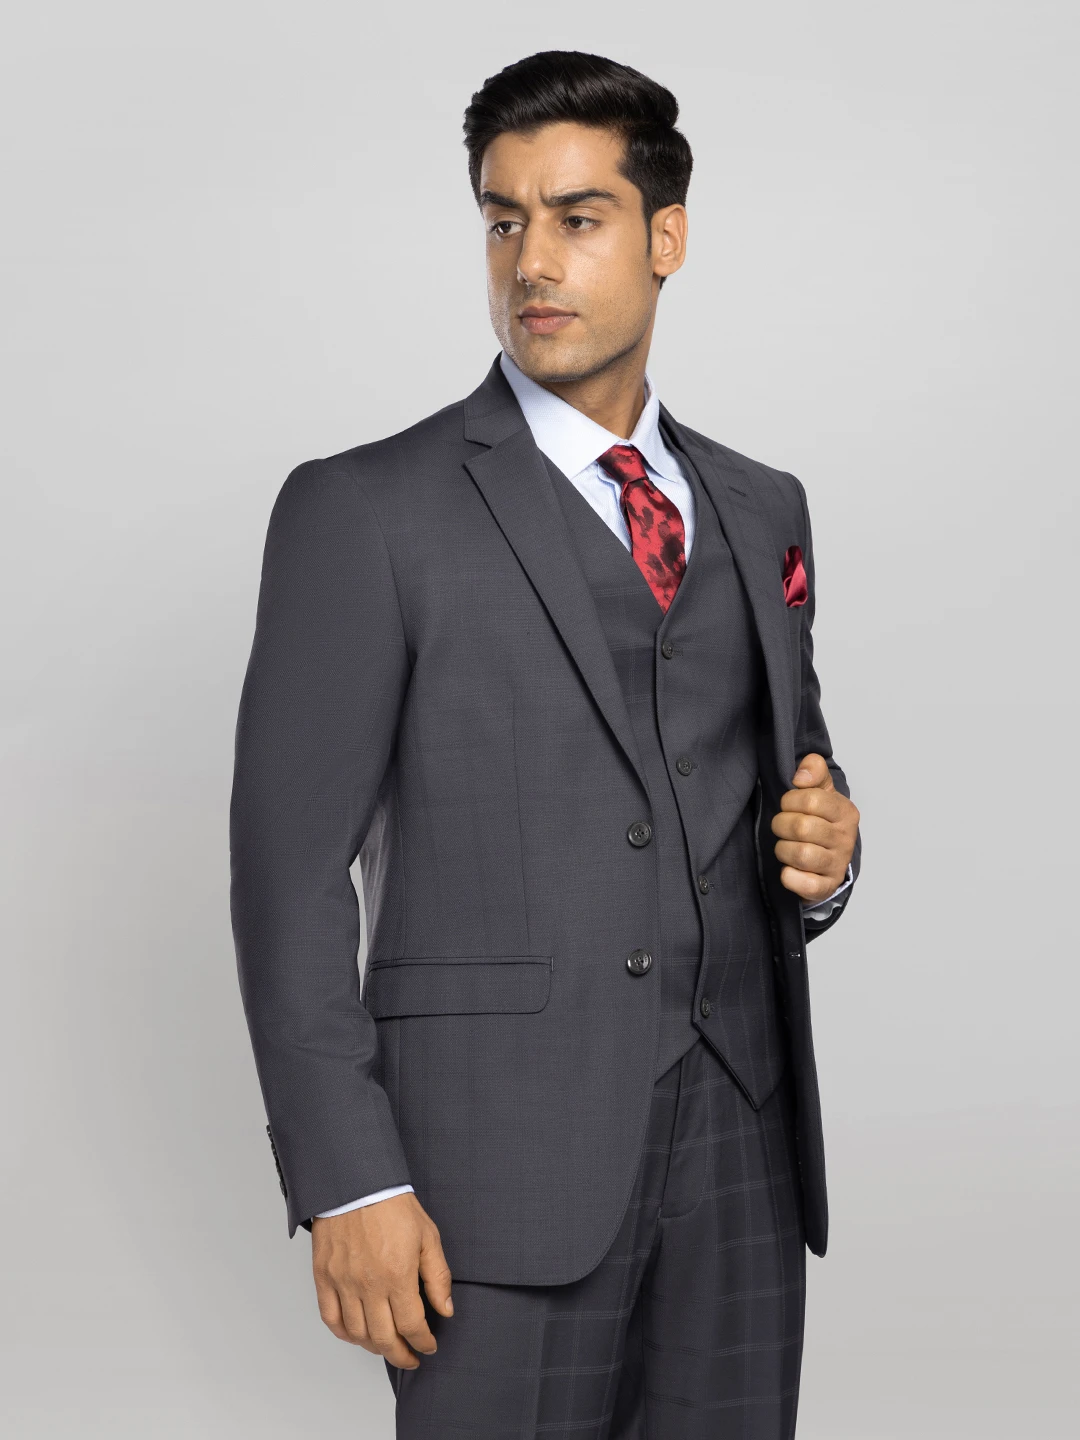 Stylish Men's Coat Suits | Designer Suits for Men - P N RAO